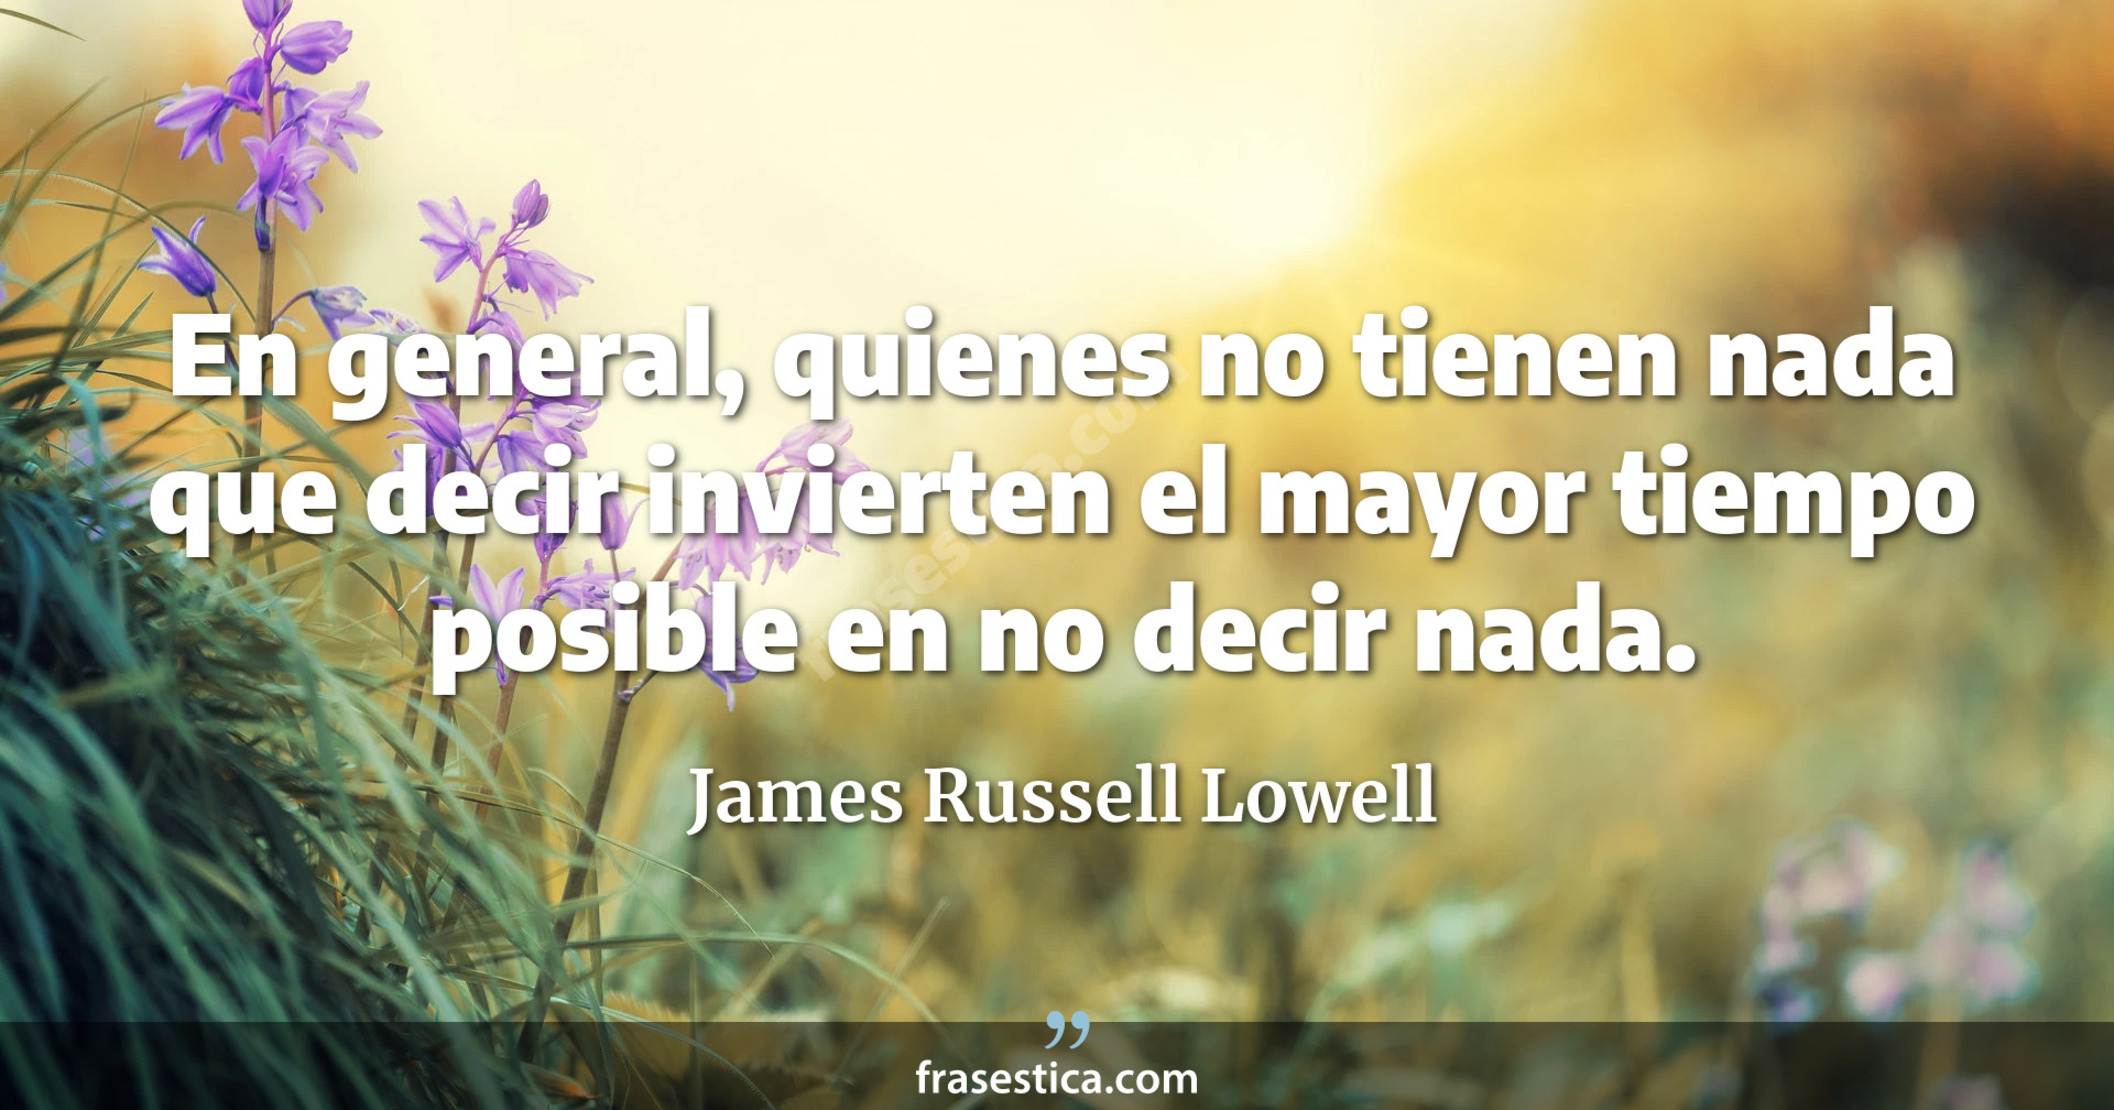 En general, quienes no tienen nada que decir invierten el mayor tiempo posible en no decir nada. - James Russell Lowell